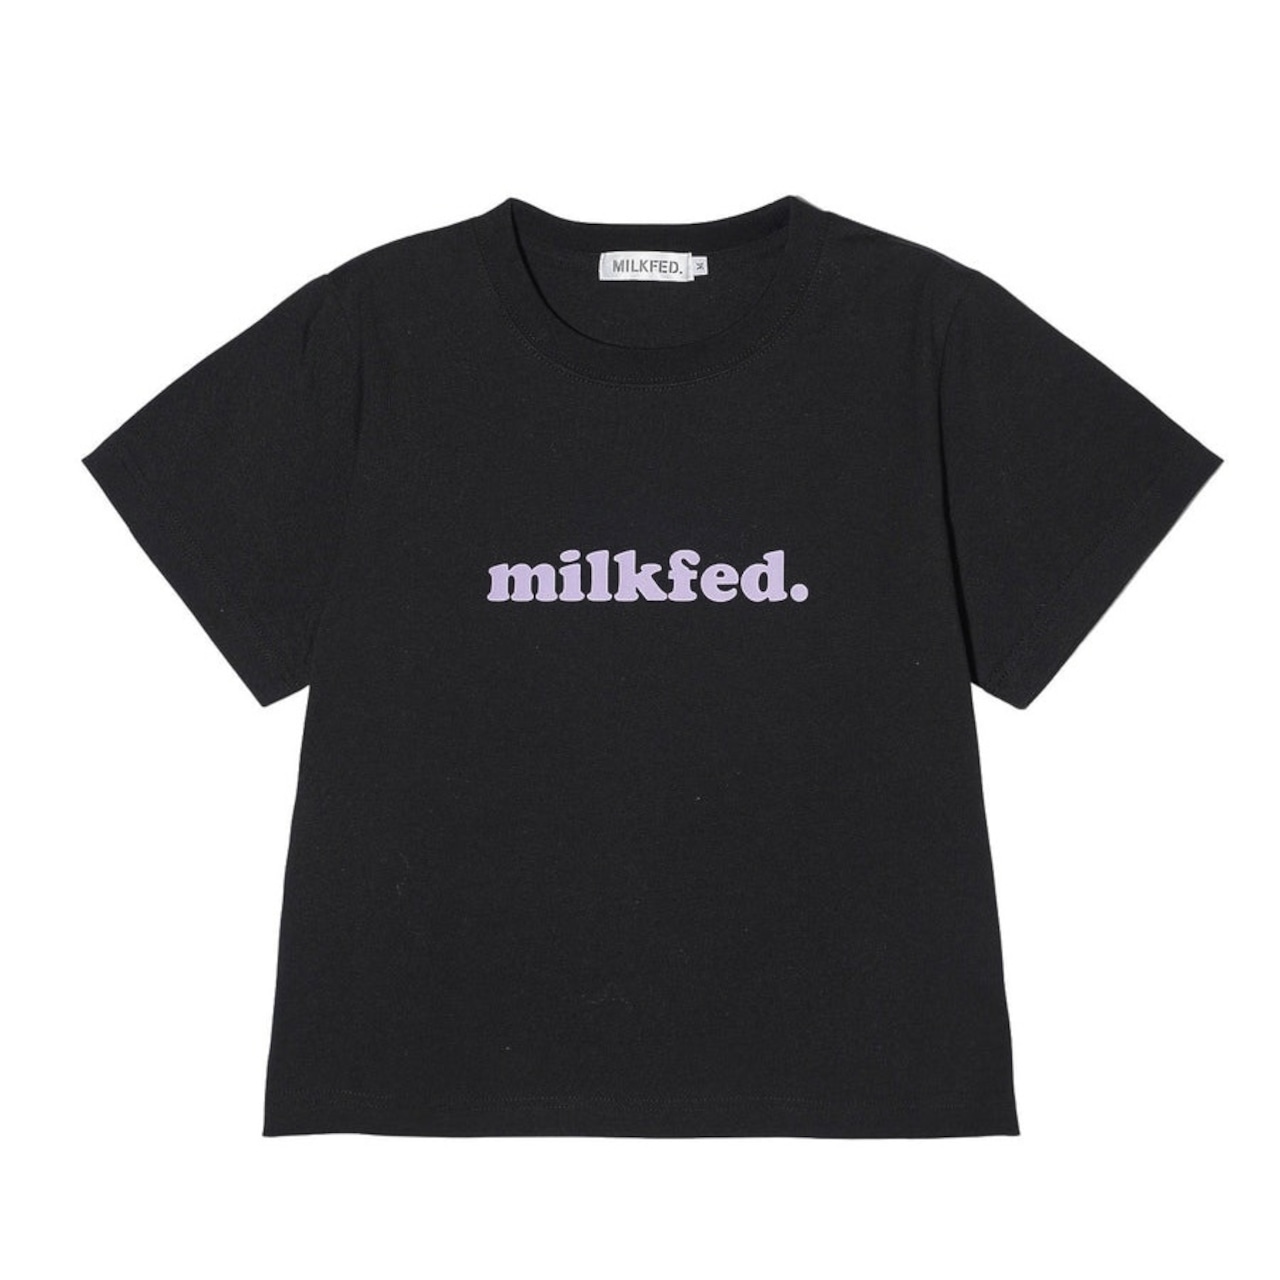 【MILKFED. 】COOPER LOGO COMPACT S/S TEE【ミルクフェド】